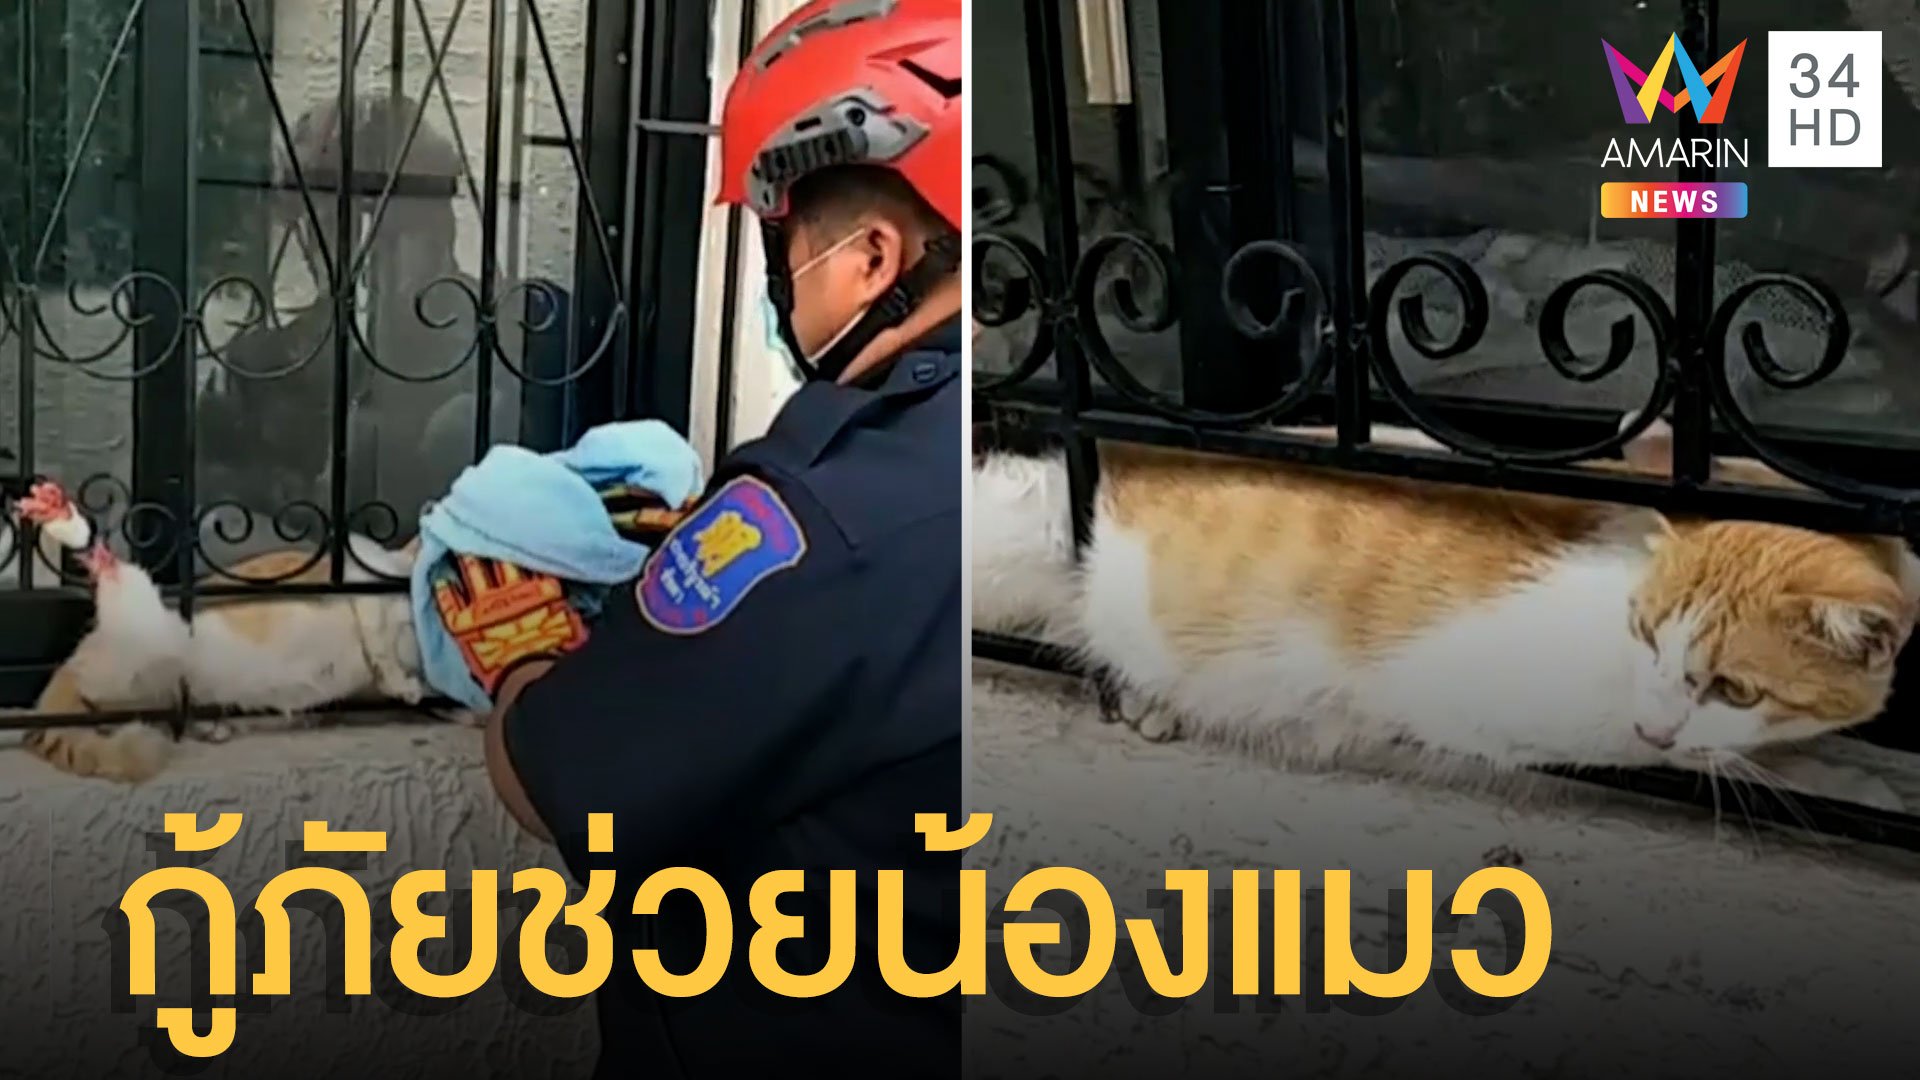 กู้ภัยเข้าช่วยแมวท้องแก่ขาหลังติดเหล็กดัด | ข่าวเที่ยงอมรินทร์ | 18 มี.ค. 65 | AMARIN TVHD34